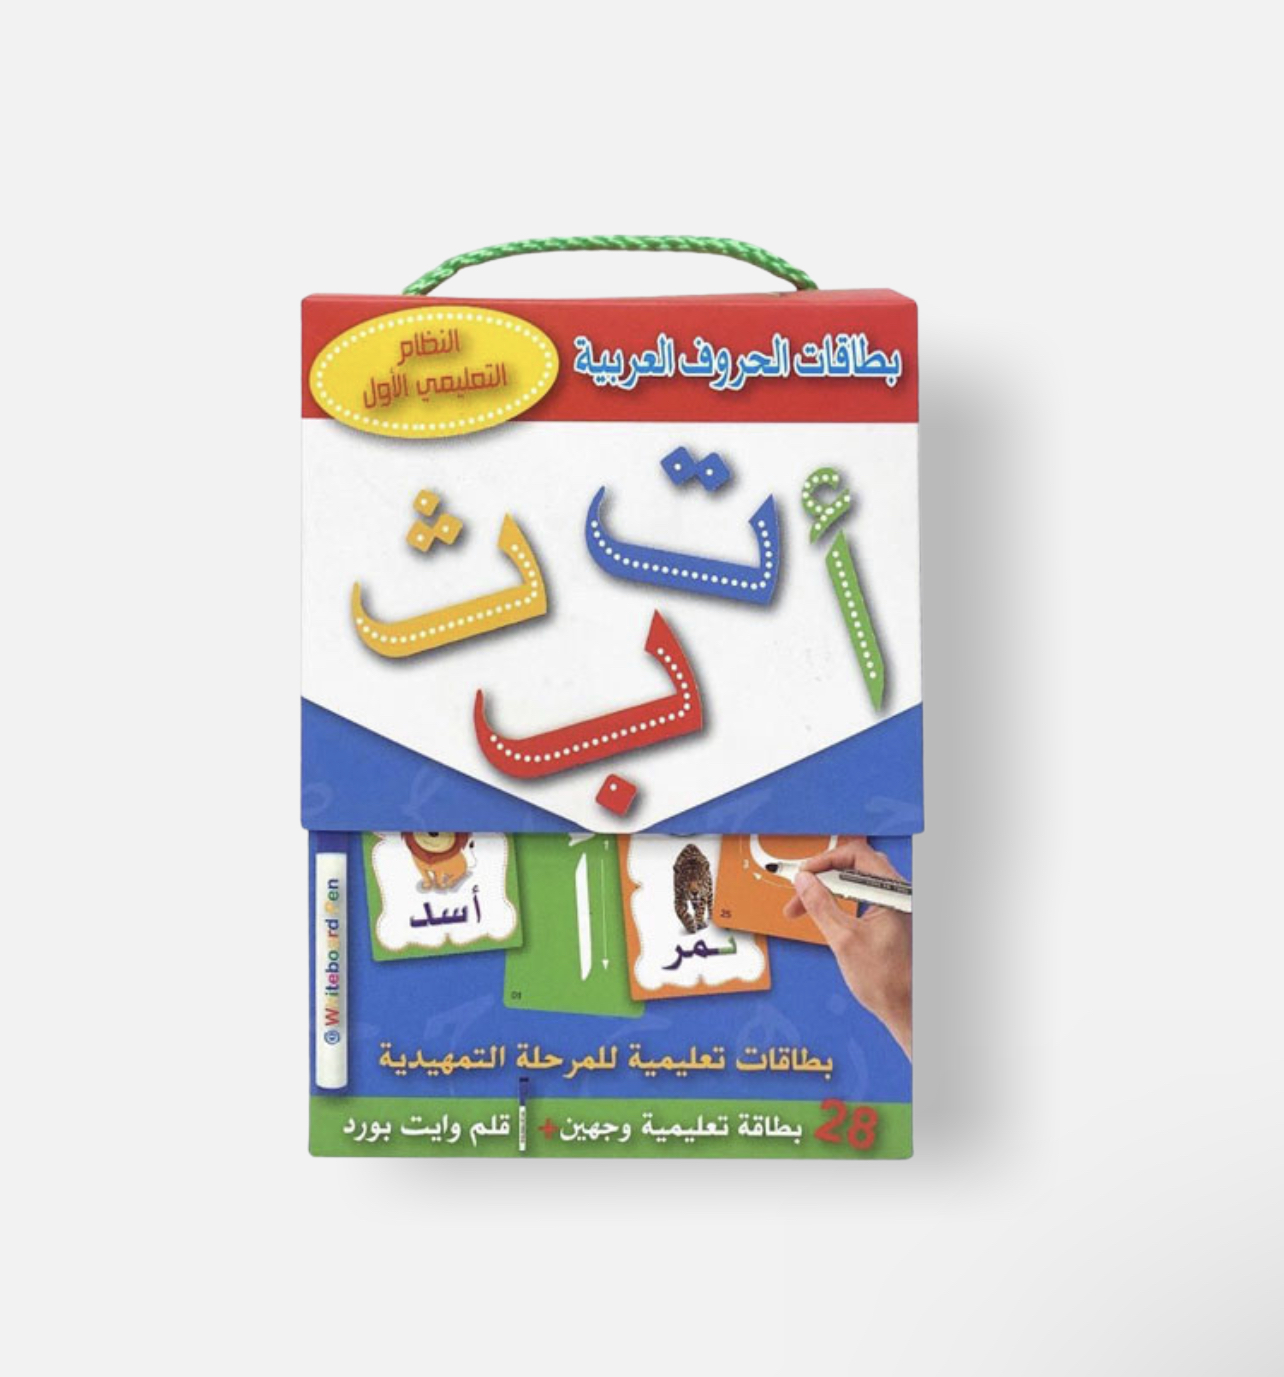 البطاقات التعليمية لتعلم الحروف العربية